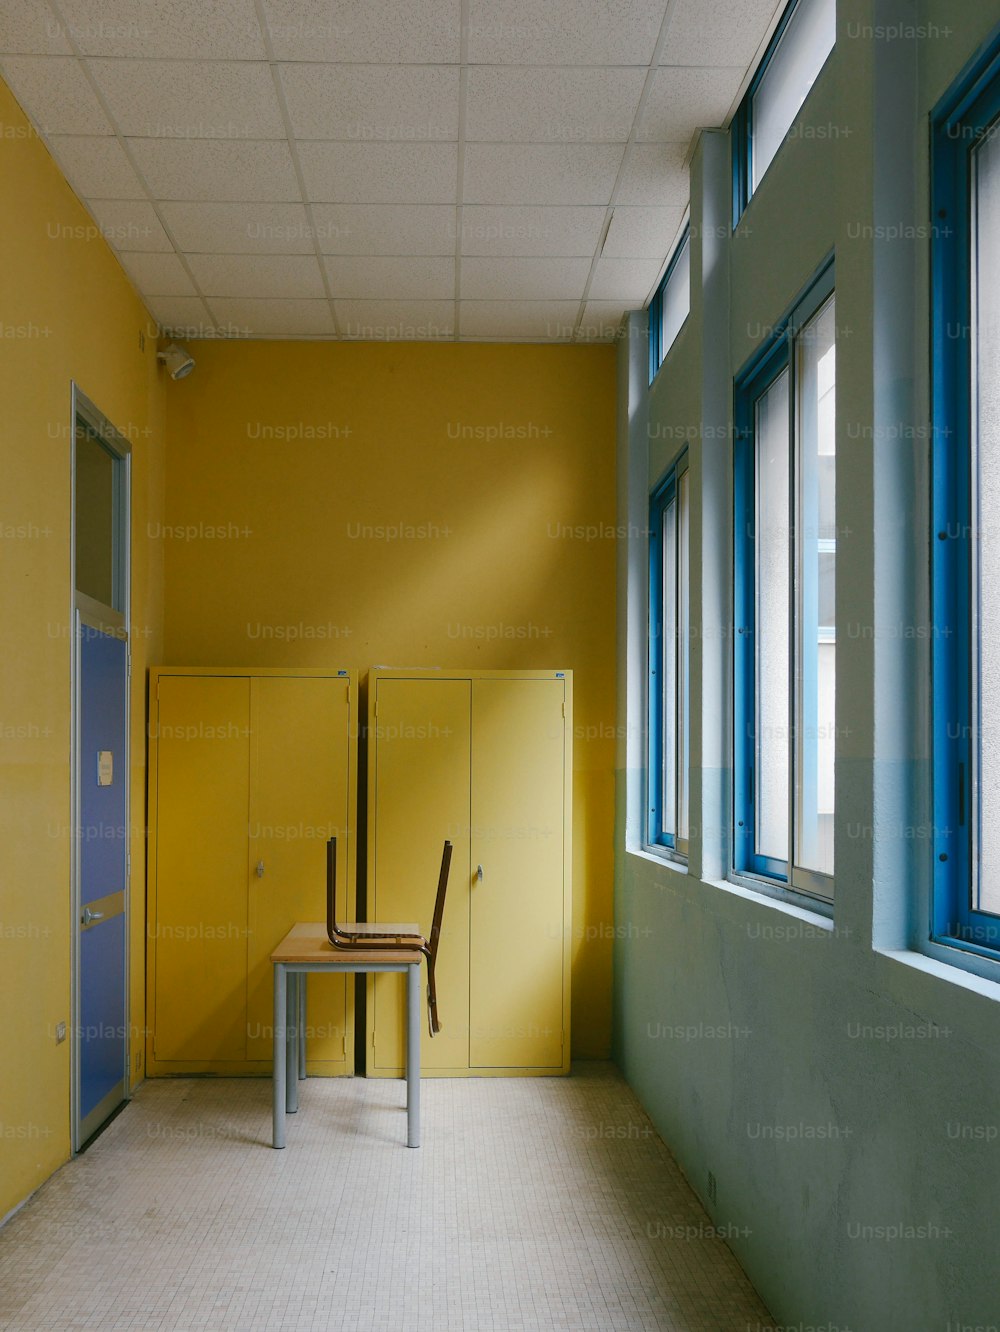 Ein Stuhl, der in einem Raum neben einer gelben Wand sitzt